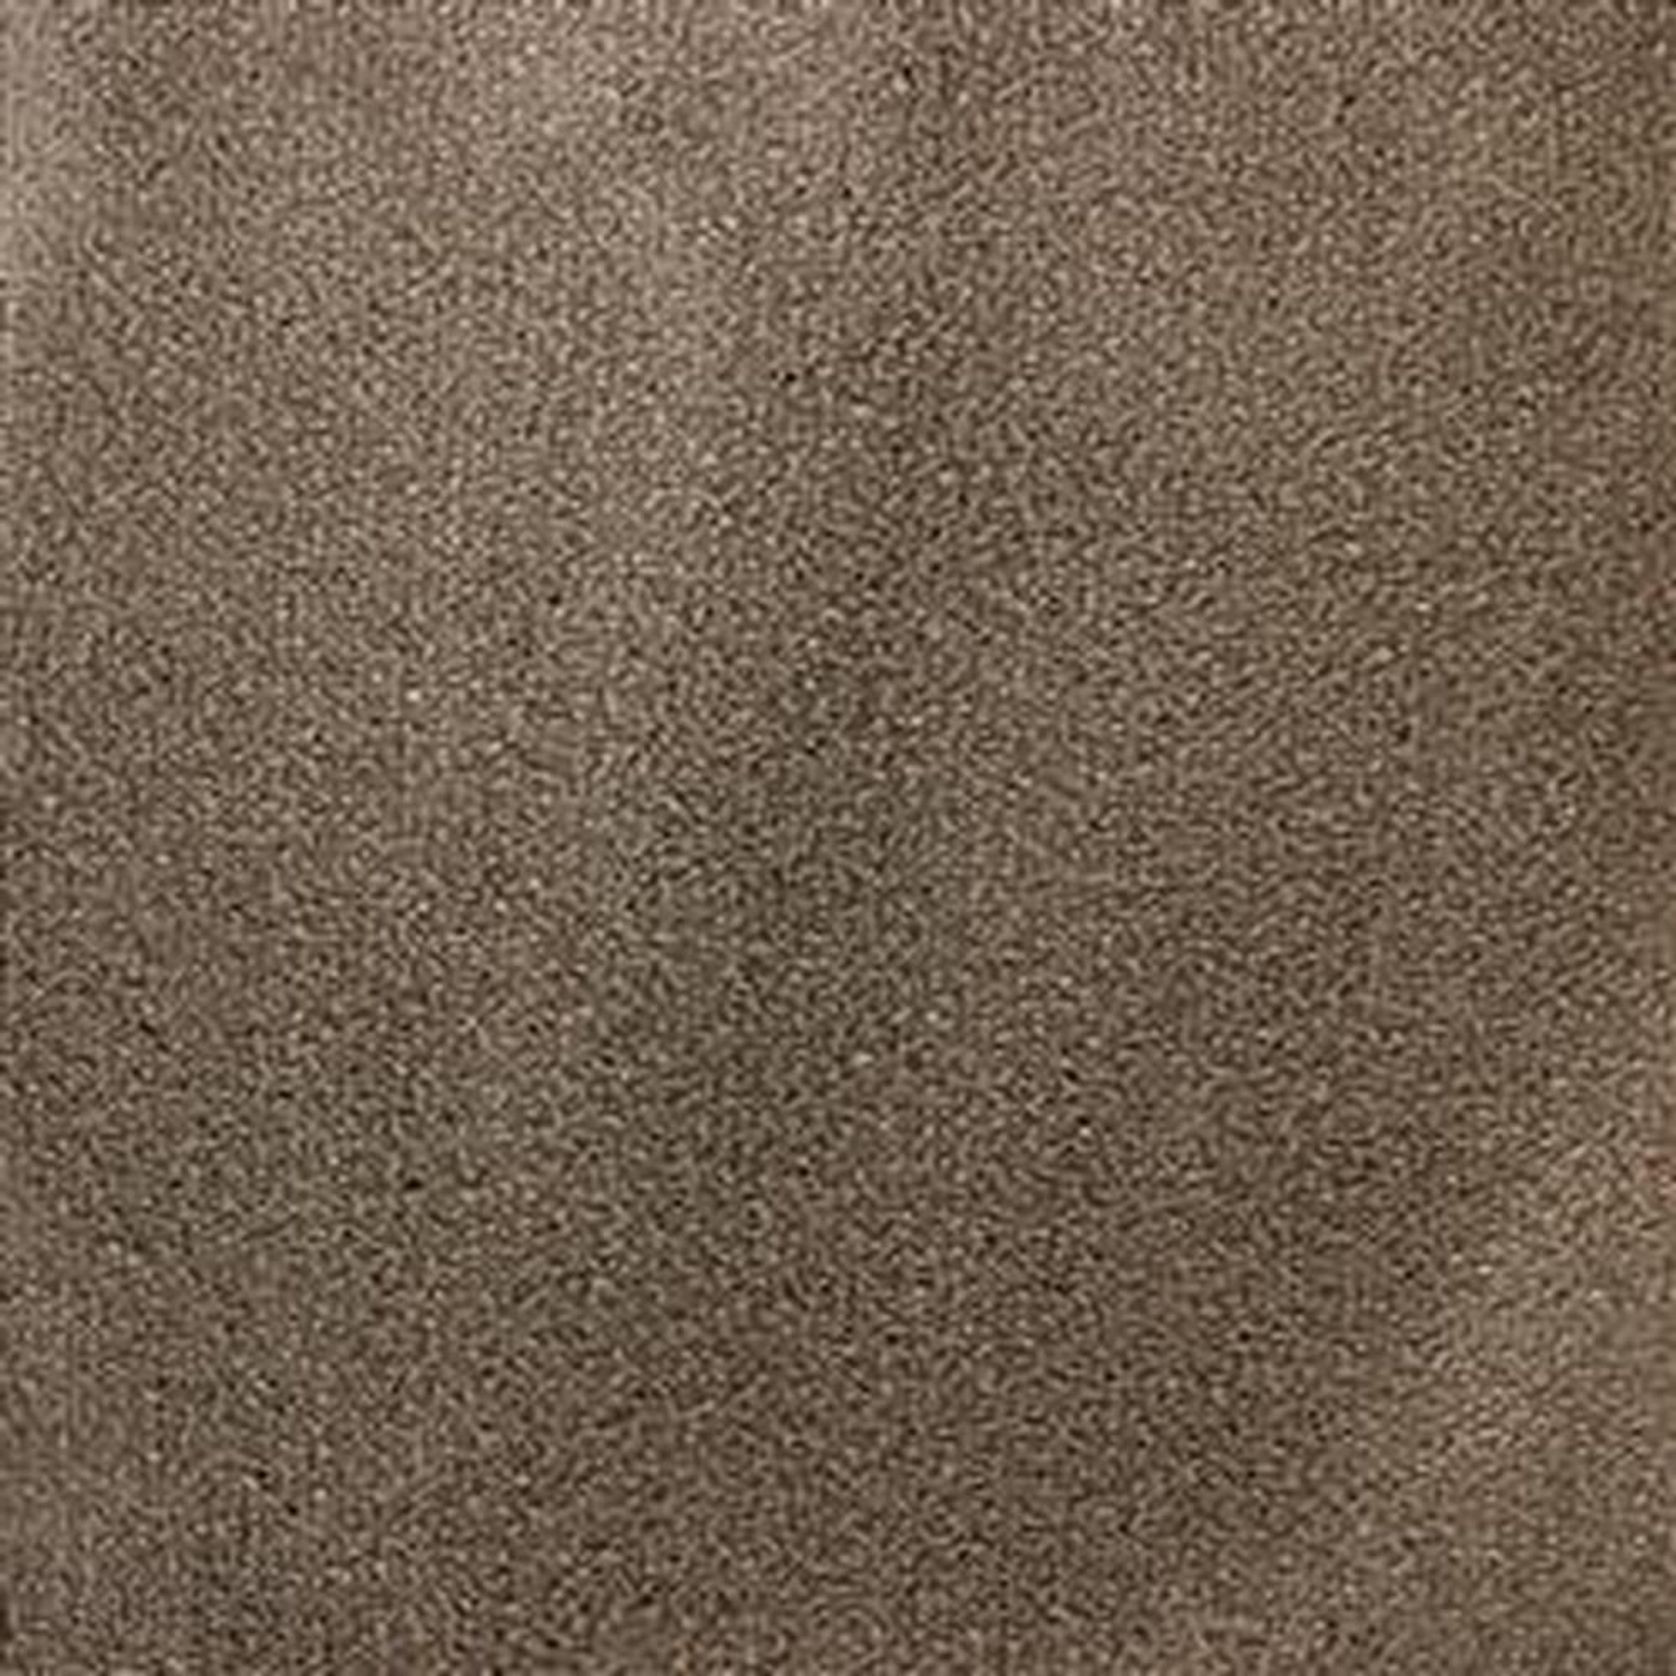 Tamino Carpet gallery detail image